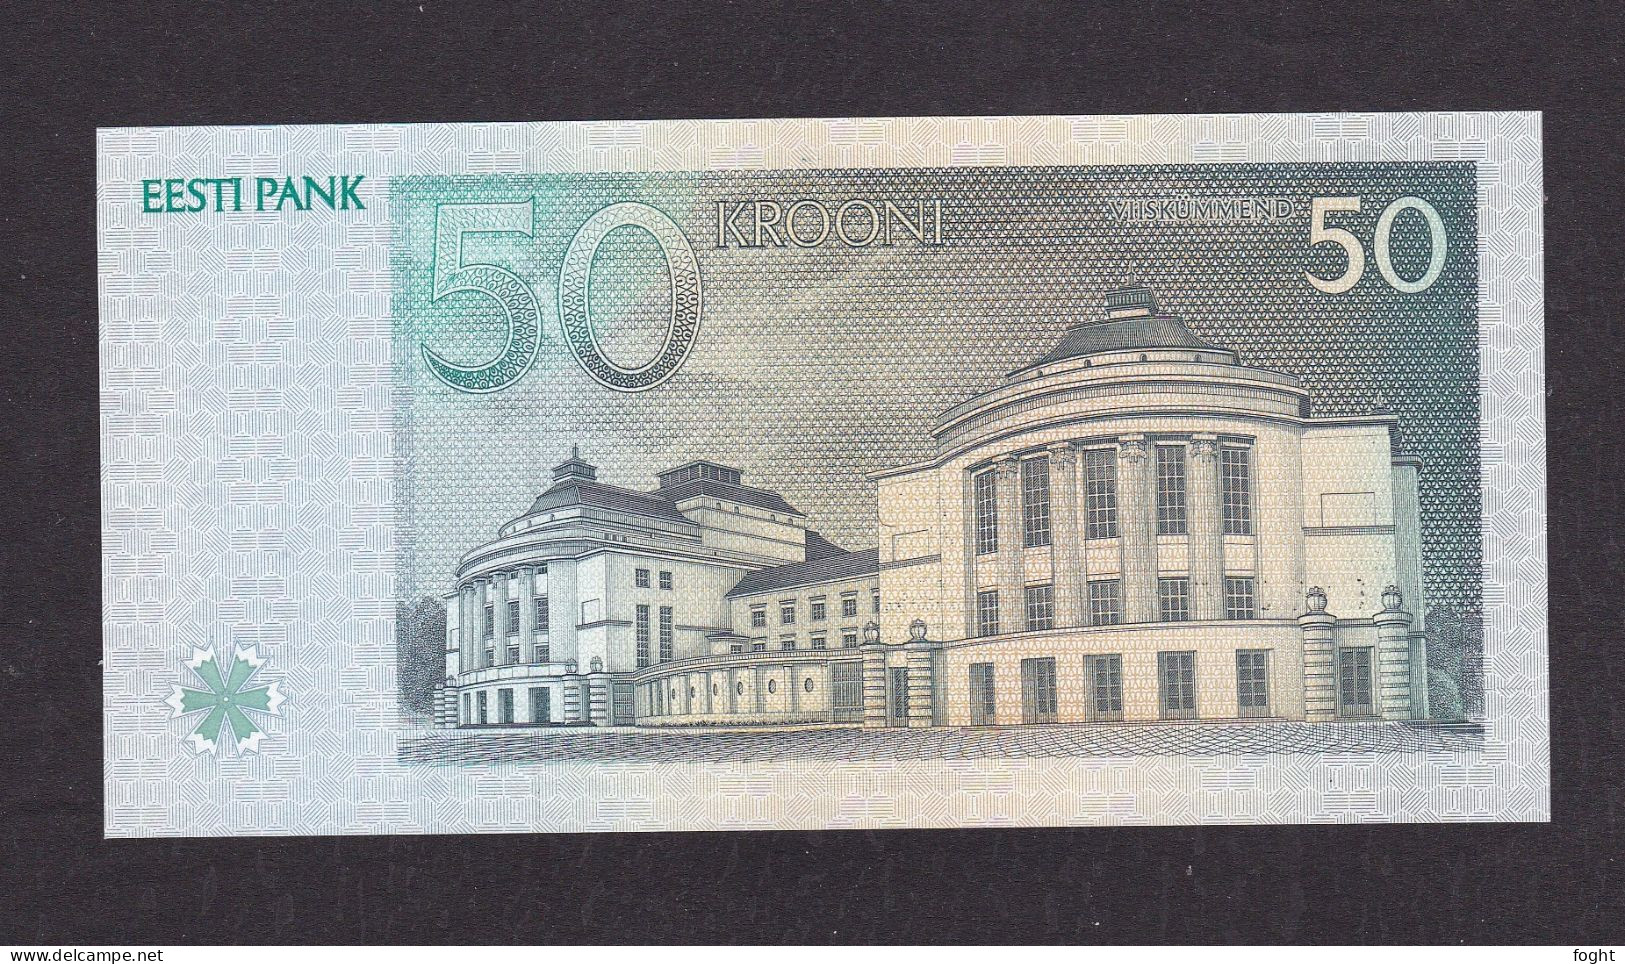 1994 Estonia Bank Of Estonia Banknote 50 Krooni,P#78A - Estland